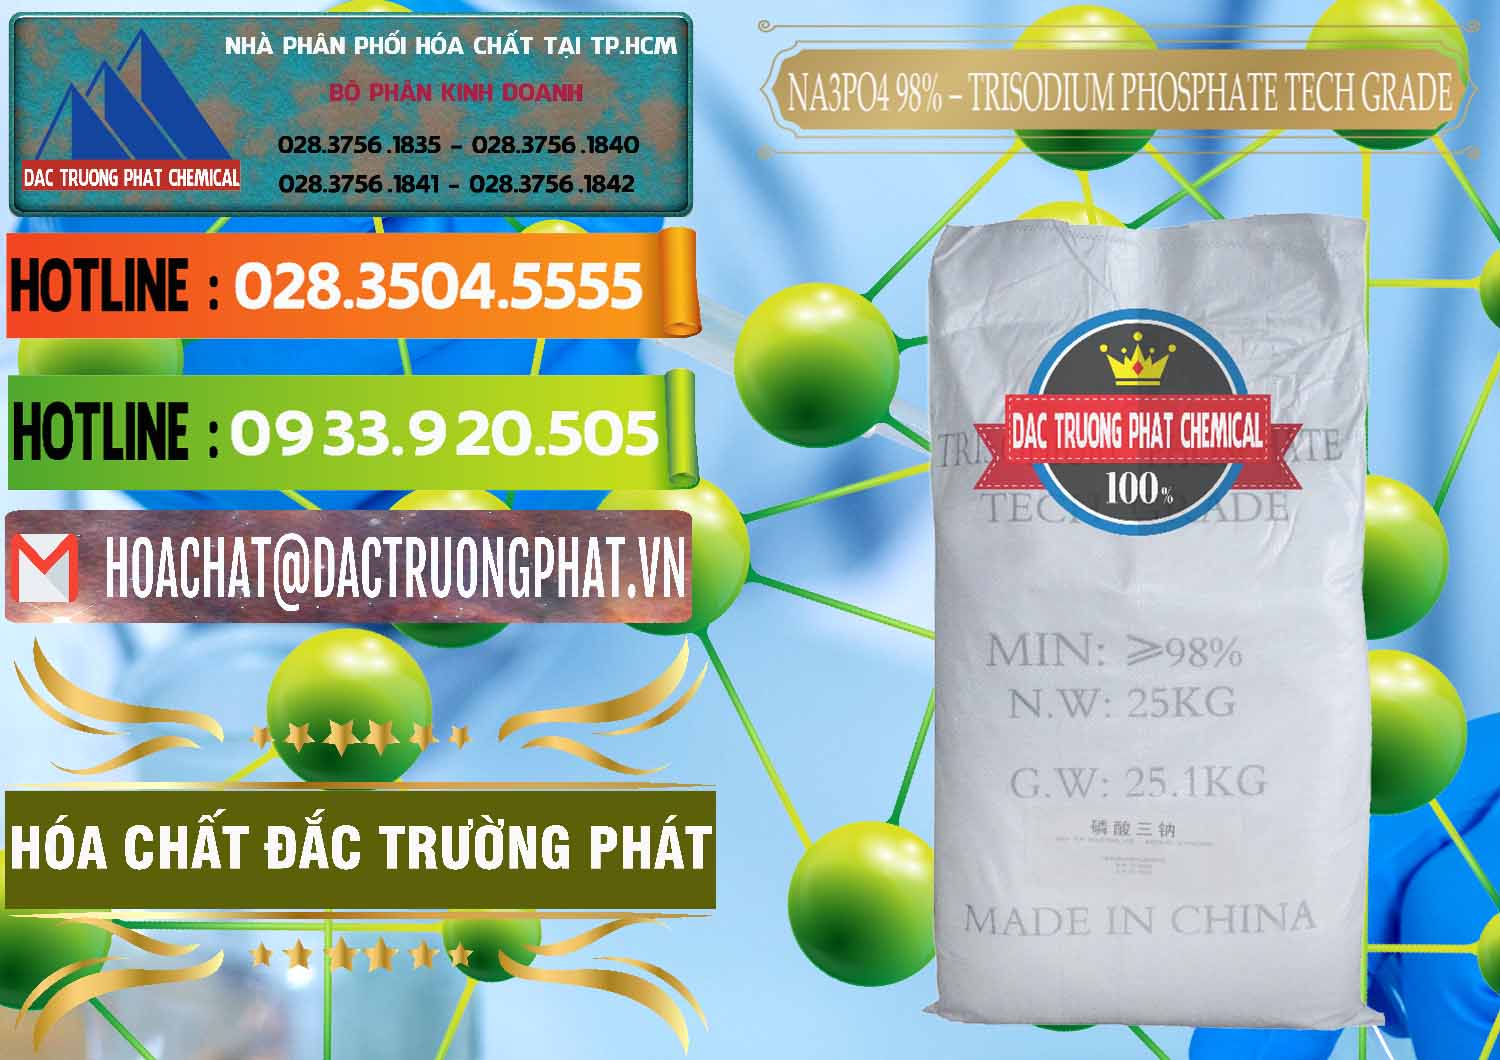 Nơi chuyên cung ứng & bán Na3PO4 – Trisodium Phosphate 96% Tech Grade Trung Quốc China - 0104 - Kinh doanh - phân phối hóa chất tại TP.HCM - cungcaphoachat.com.vn